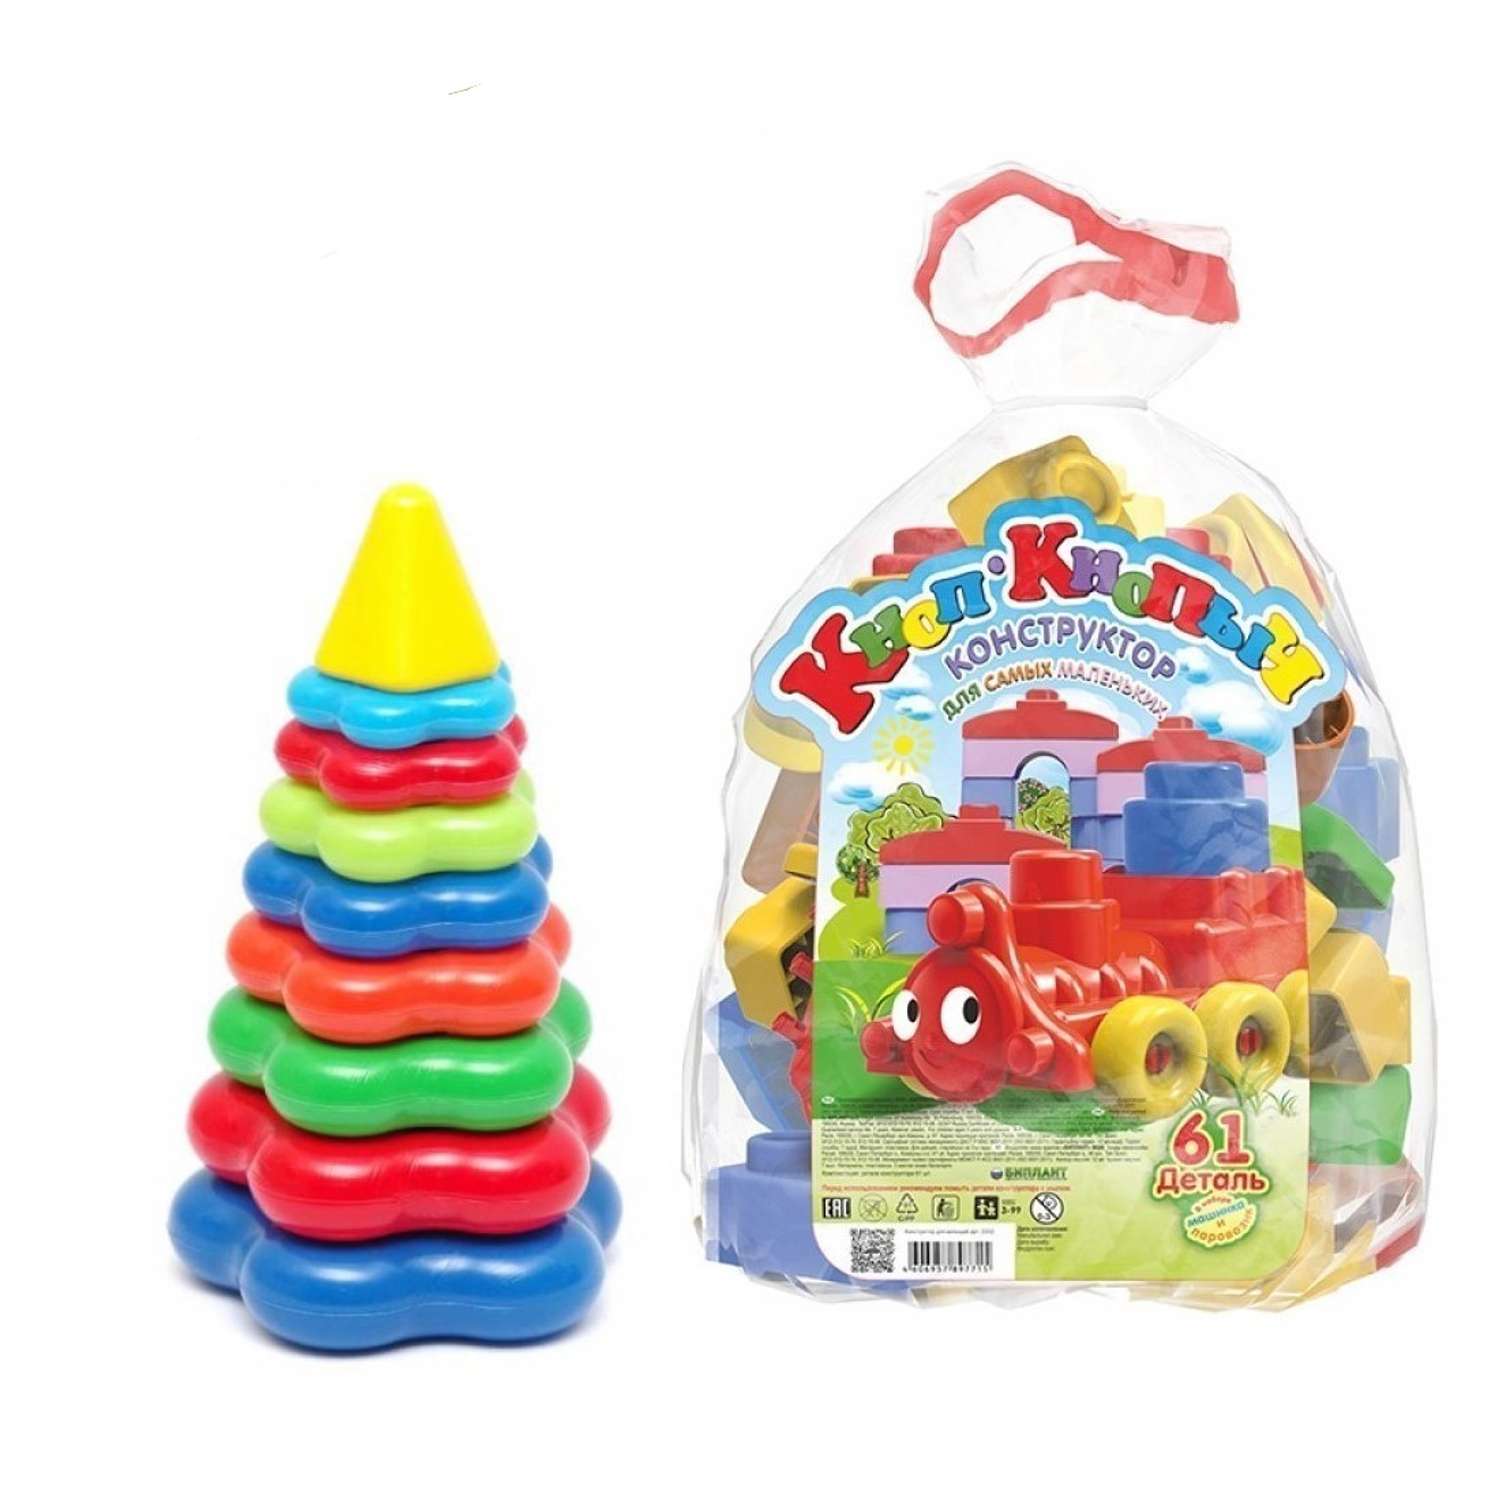 Развивающие игрушки БИПЛАНТ Конструктор для малышей Кноп-Кнопыч 61 деталь + Пирамидка детская большая - фото 1